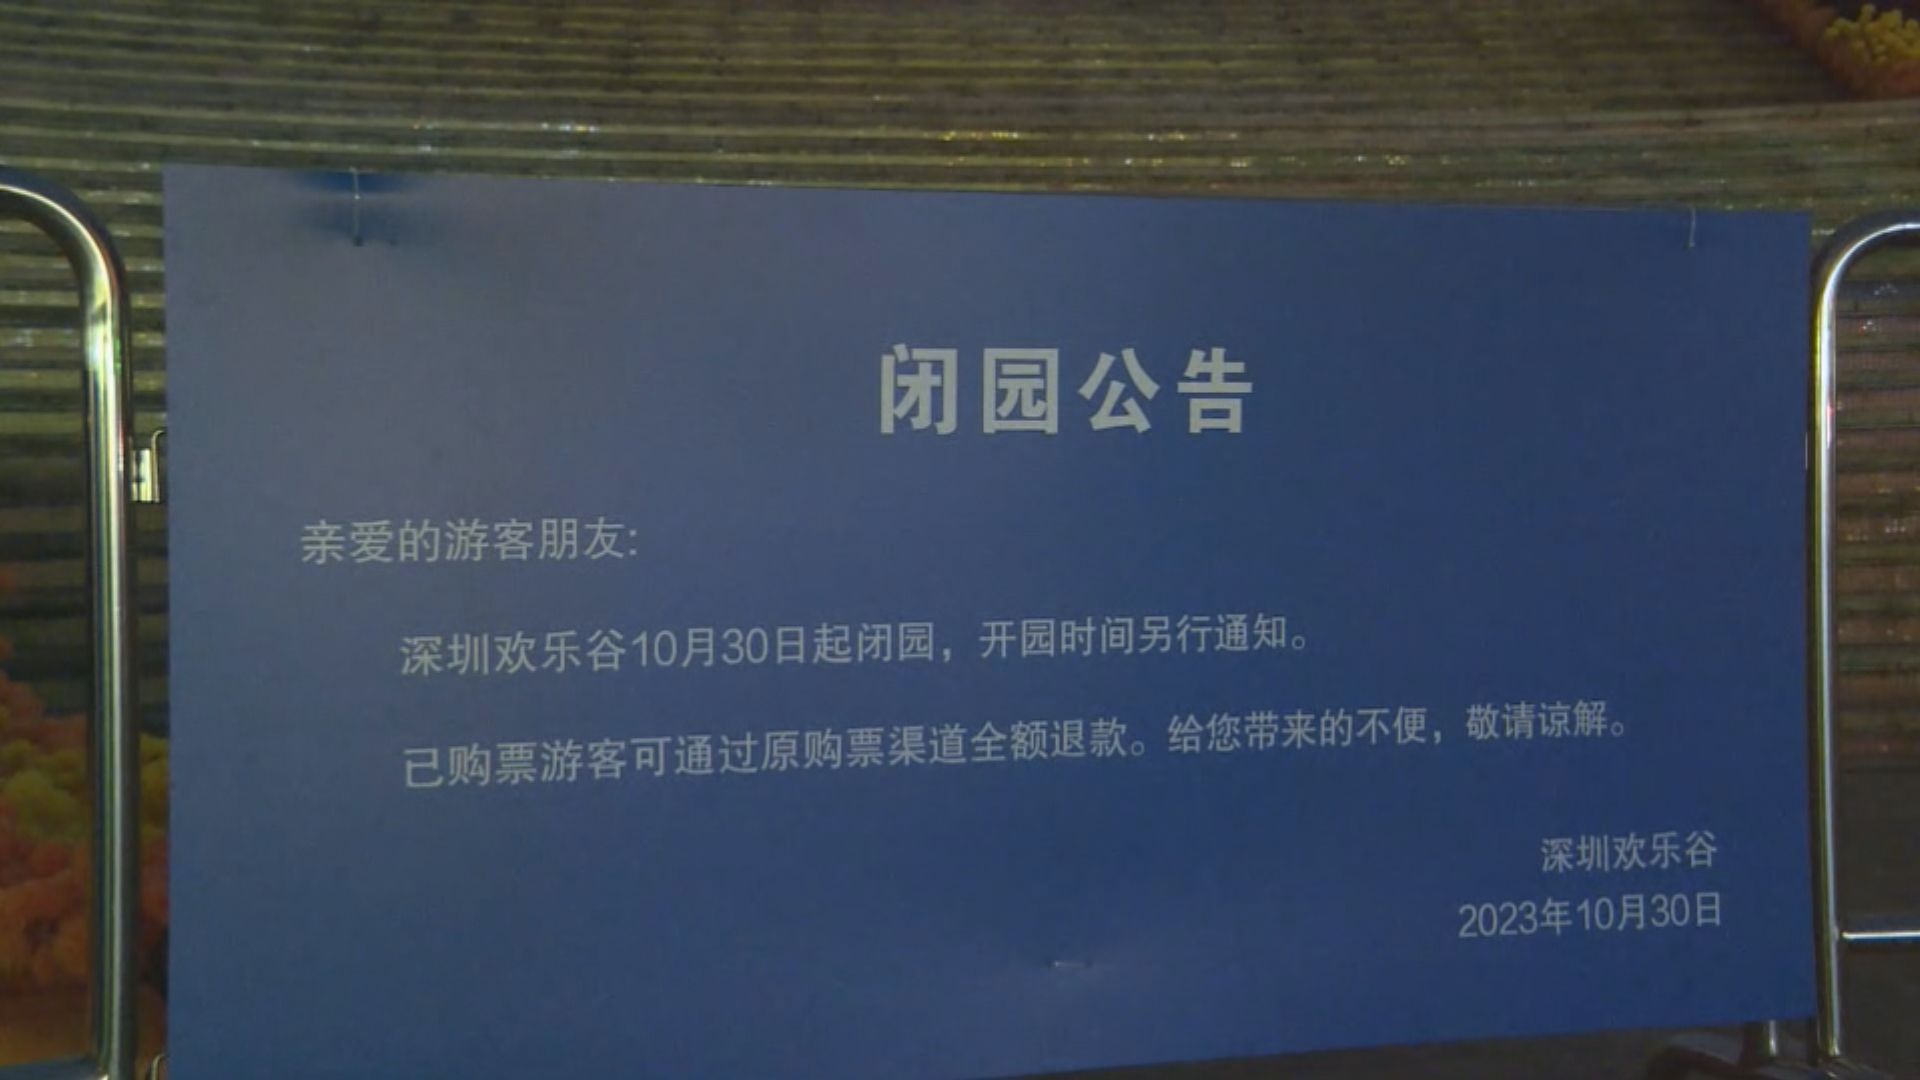 深圳歡樂谷過山車追尾事故 最新通報指有17人留院診治